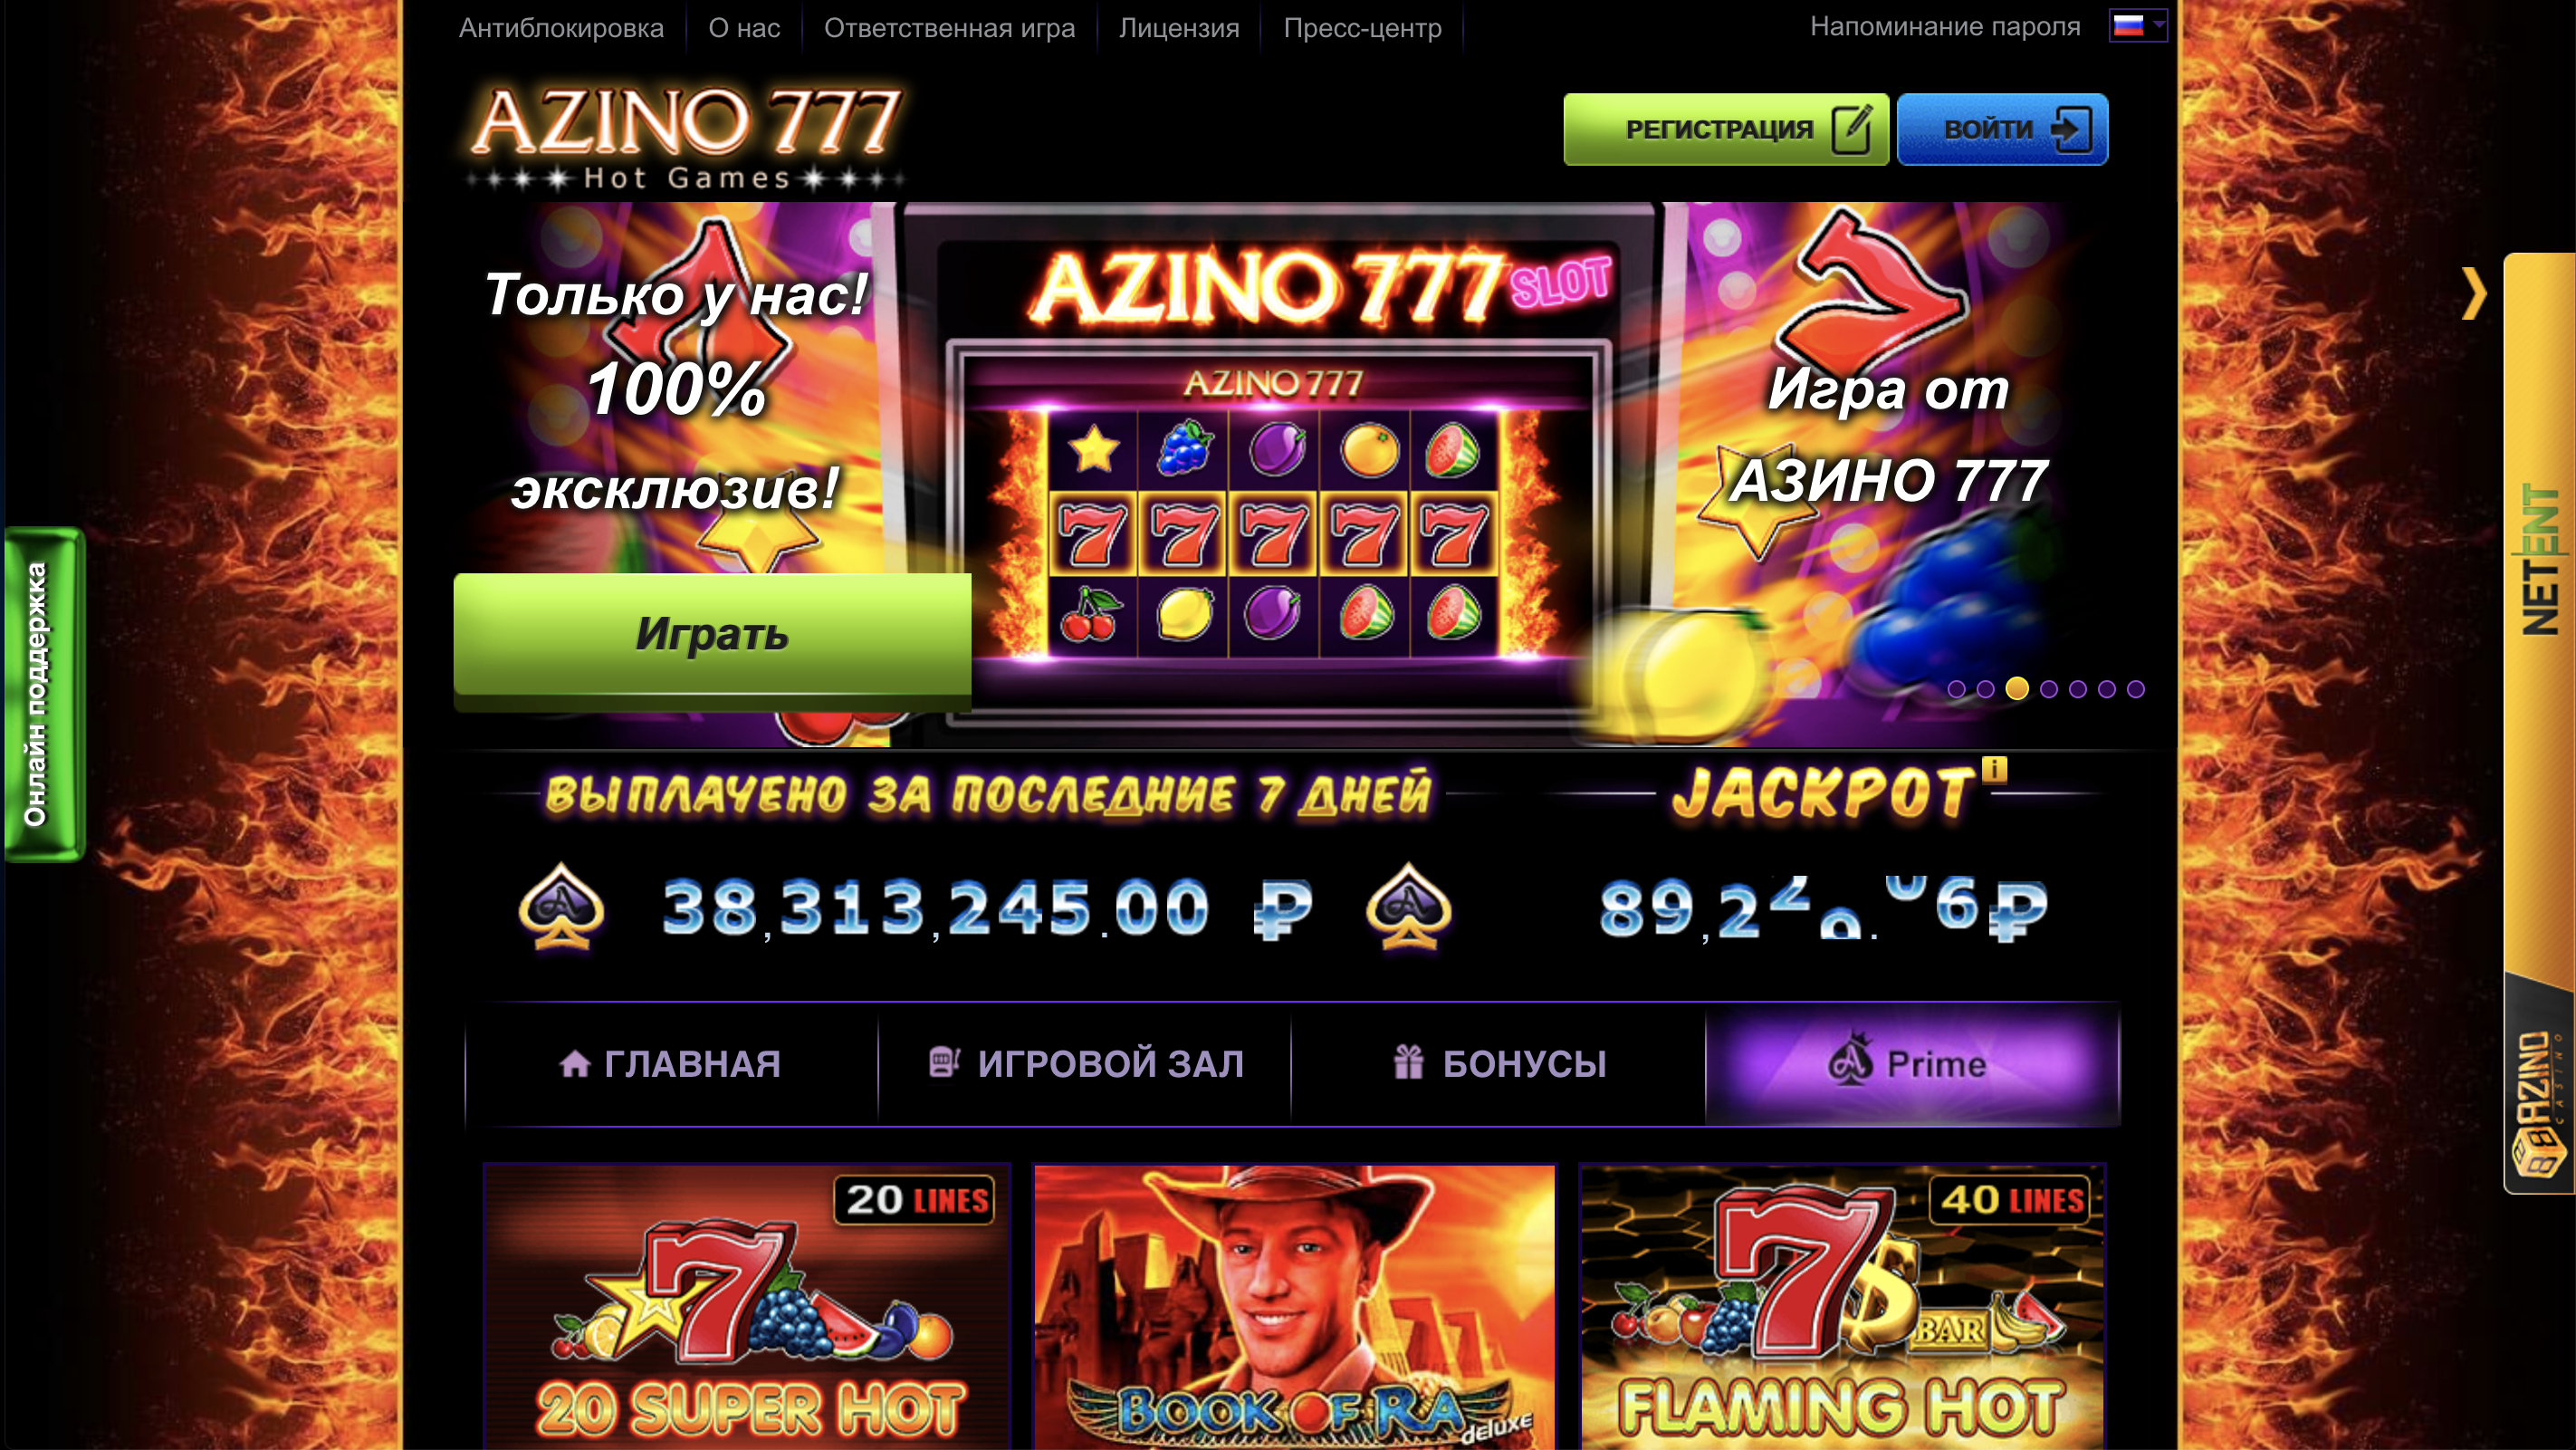 Azino777 мобильный сайт sbs. Казино азино777 бездепозитный бонус. Азино777 казино зеркало. Казино три топора 777.